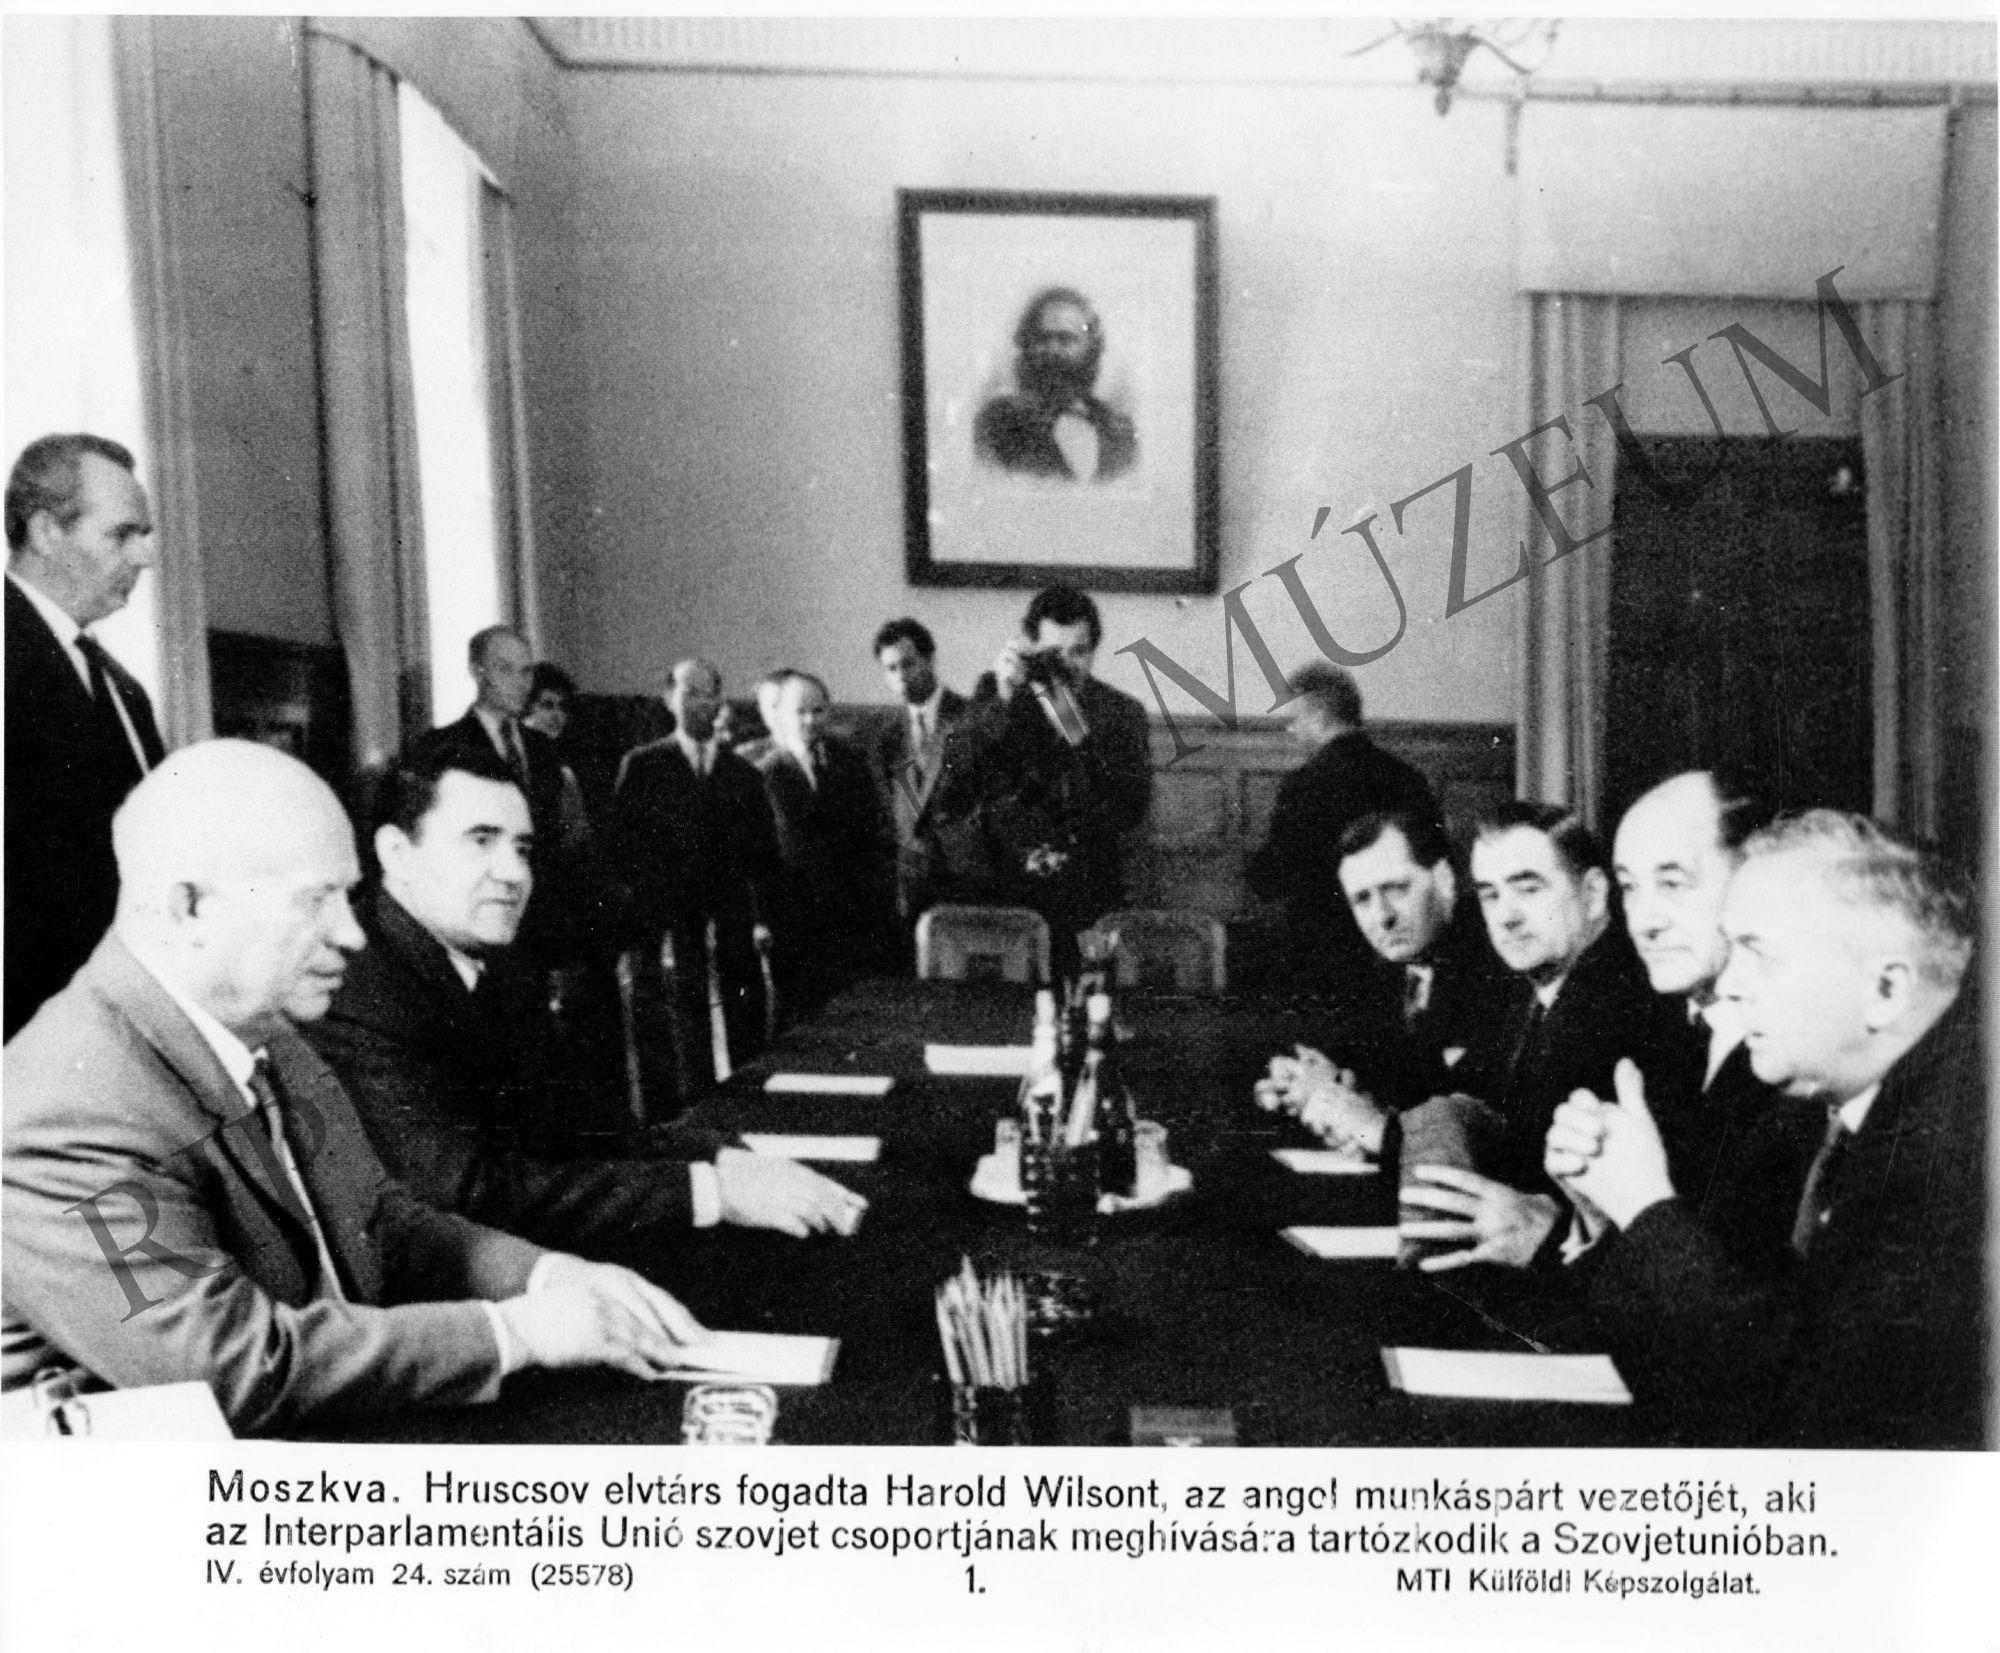 Hruscsov Harold Wilstonnal, az angol munkáspárt vezetőjével tárgyal, aki az Interparlamentáris Unió szovjet csoportjának meghívására a Szovjetunióba érkezett. (Rippl-Rónai Múzeum CC BY-NC-SA)